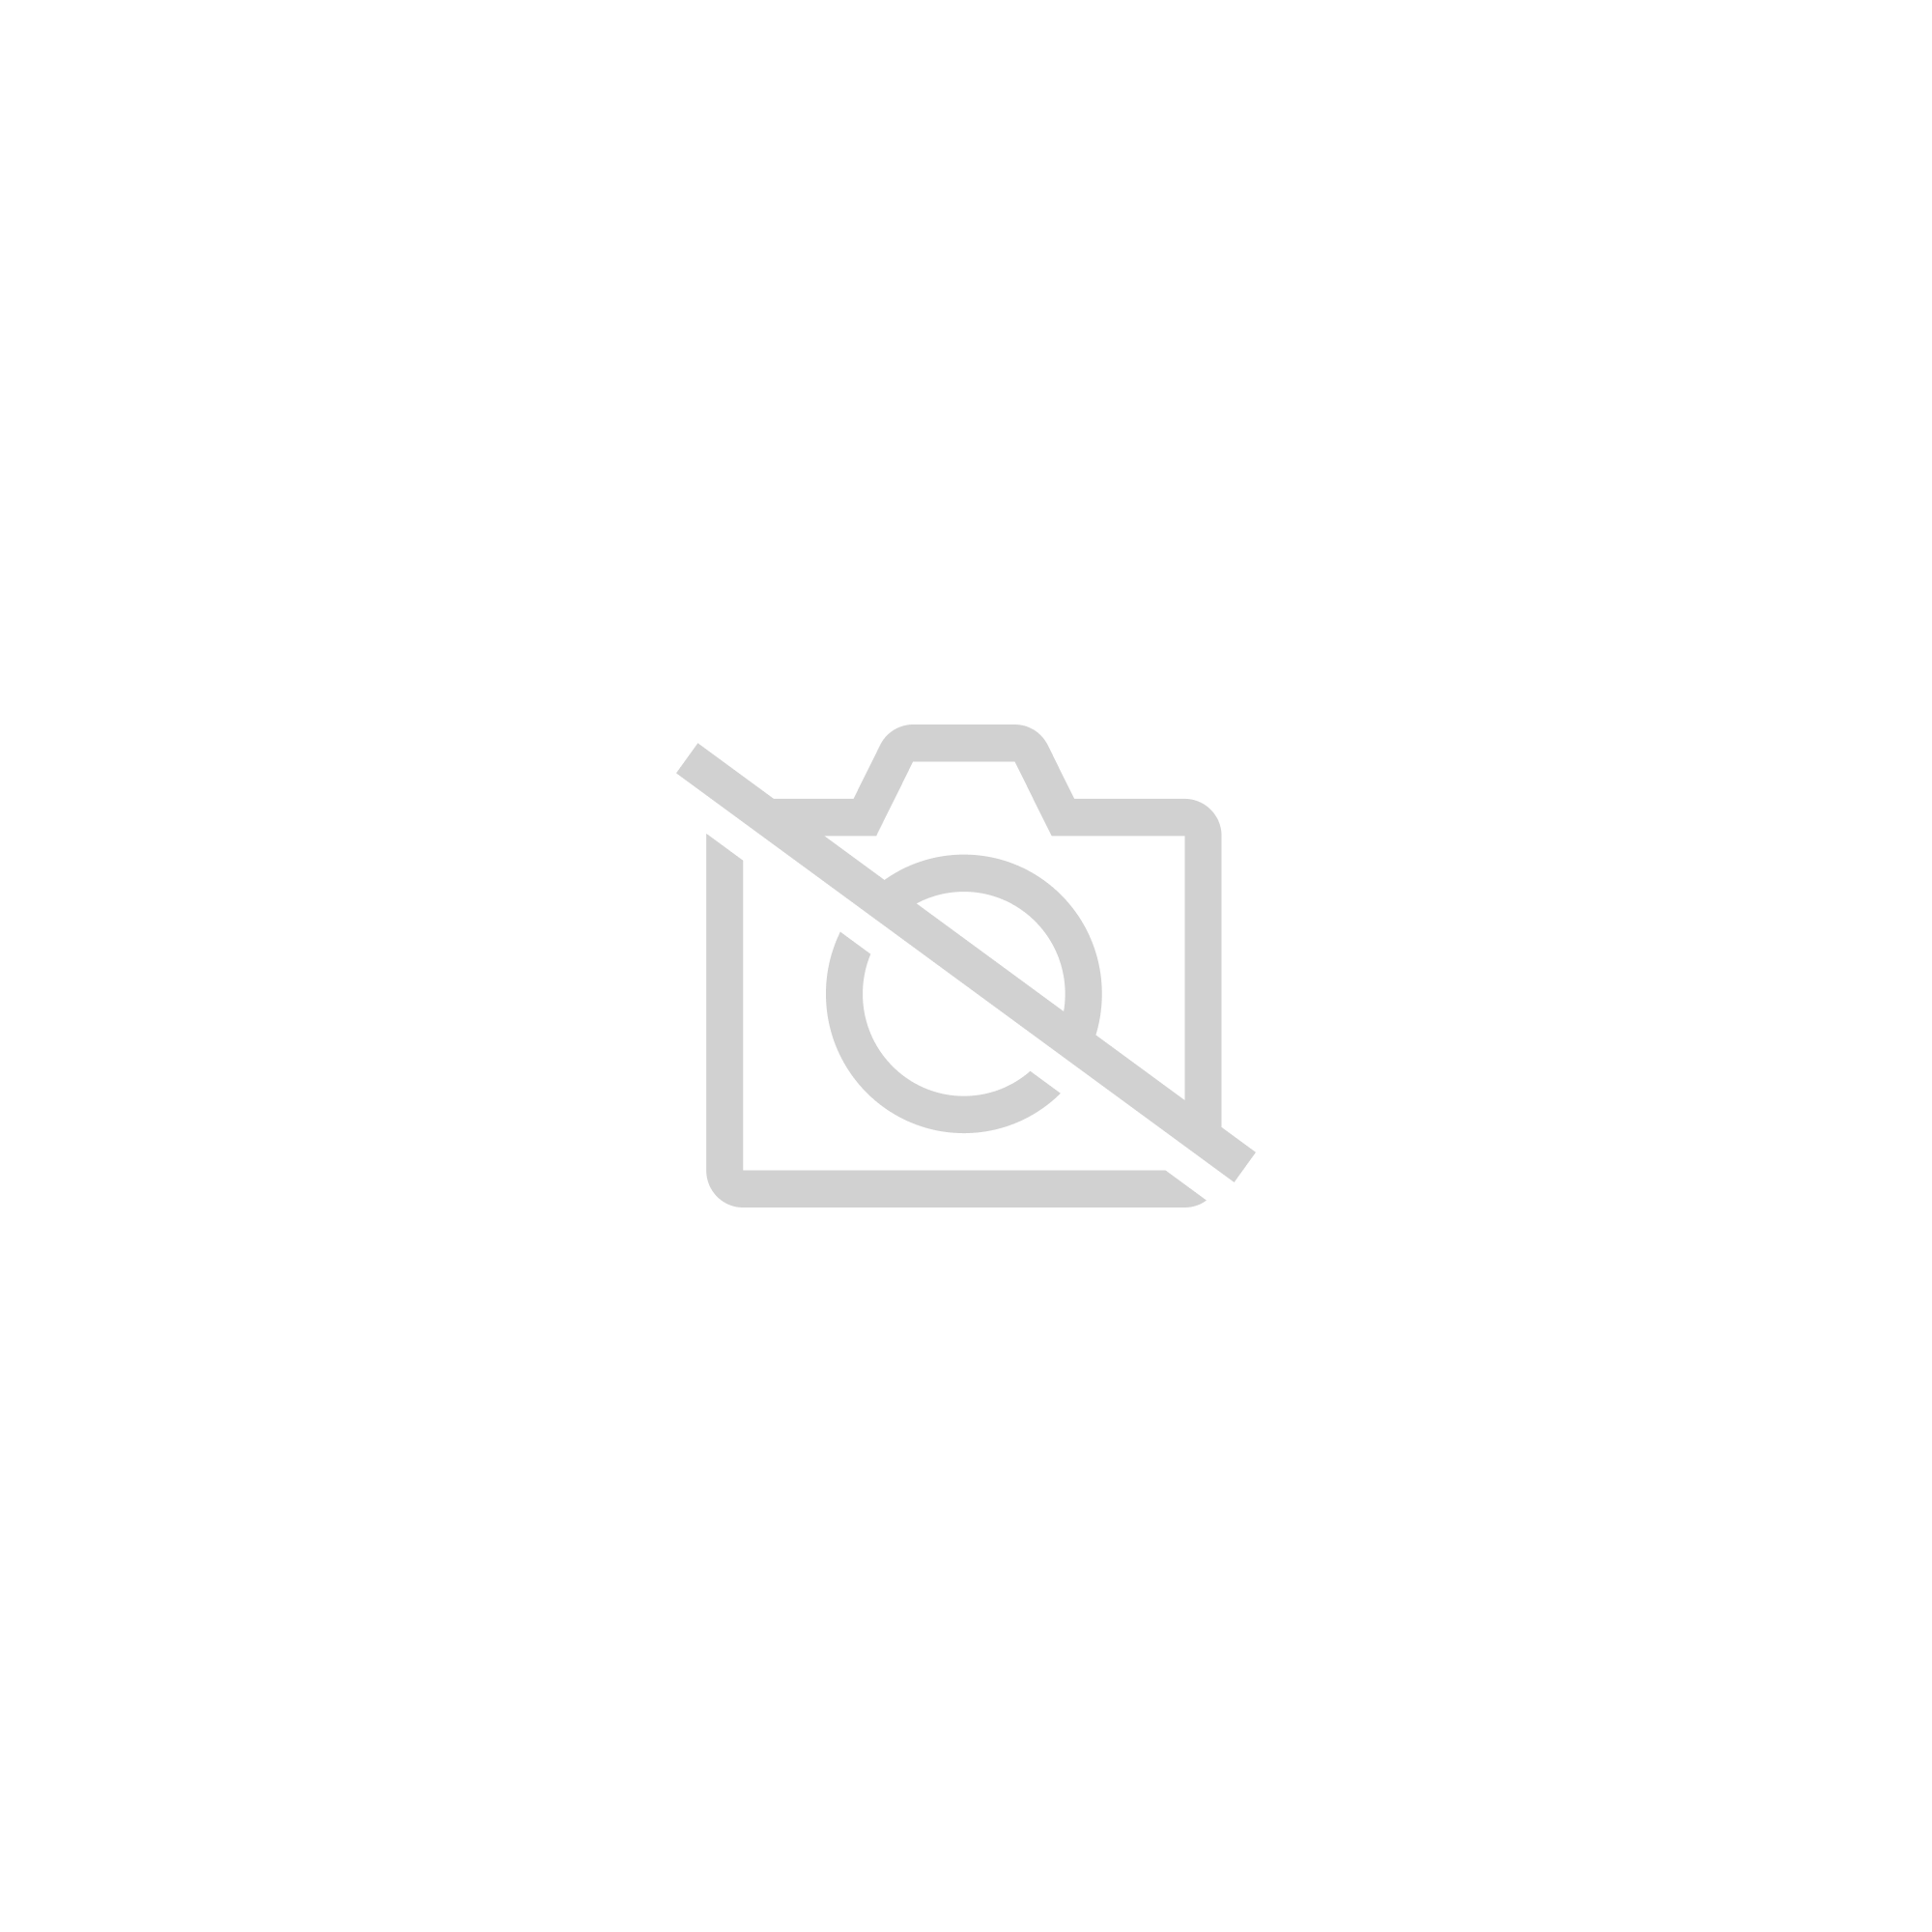 Bannière de Fanion en Tissu 33 Feet Guirlandes de Bannières Triangulaires Banderole de Bruant en Tissu Vintage avec Crochets de Suspension pour Fête Vacance Mariage Maison Jardin Décoration